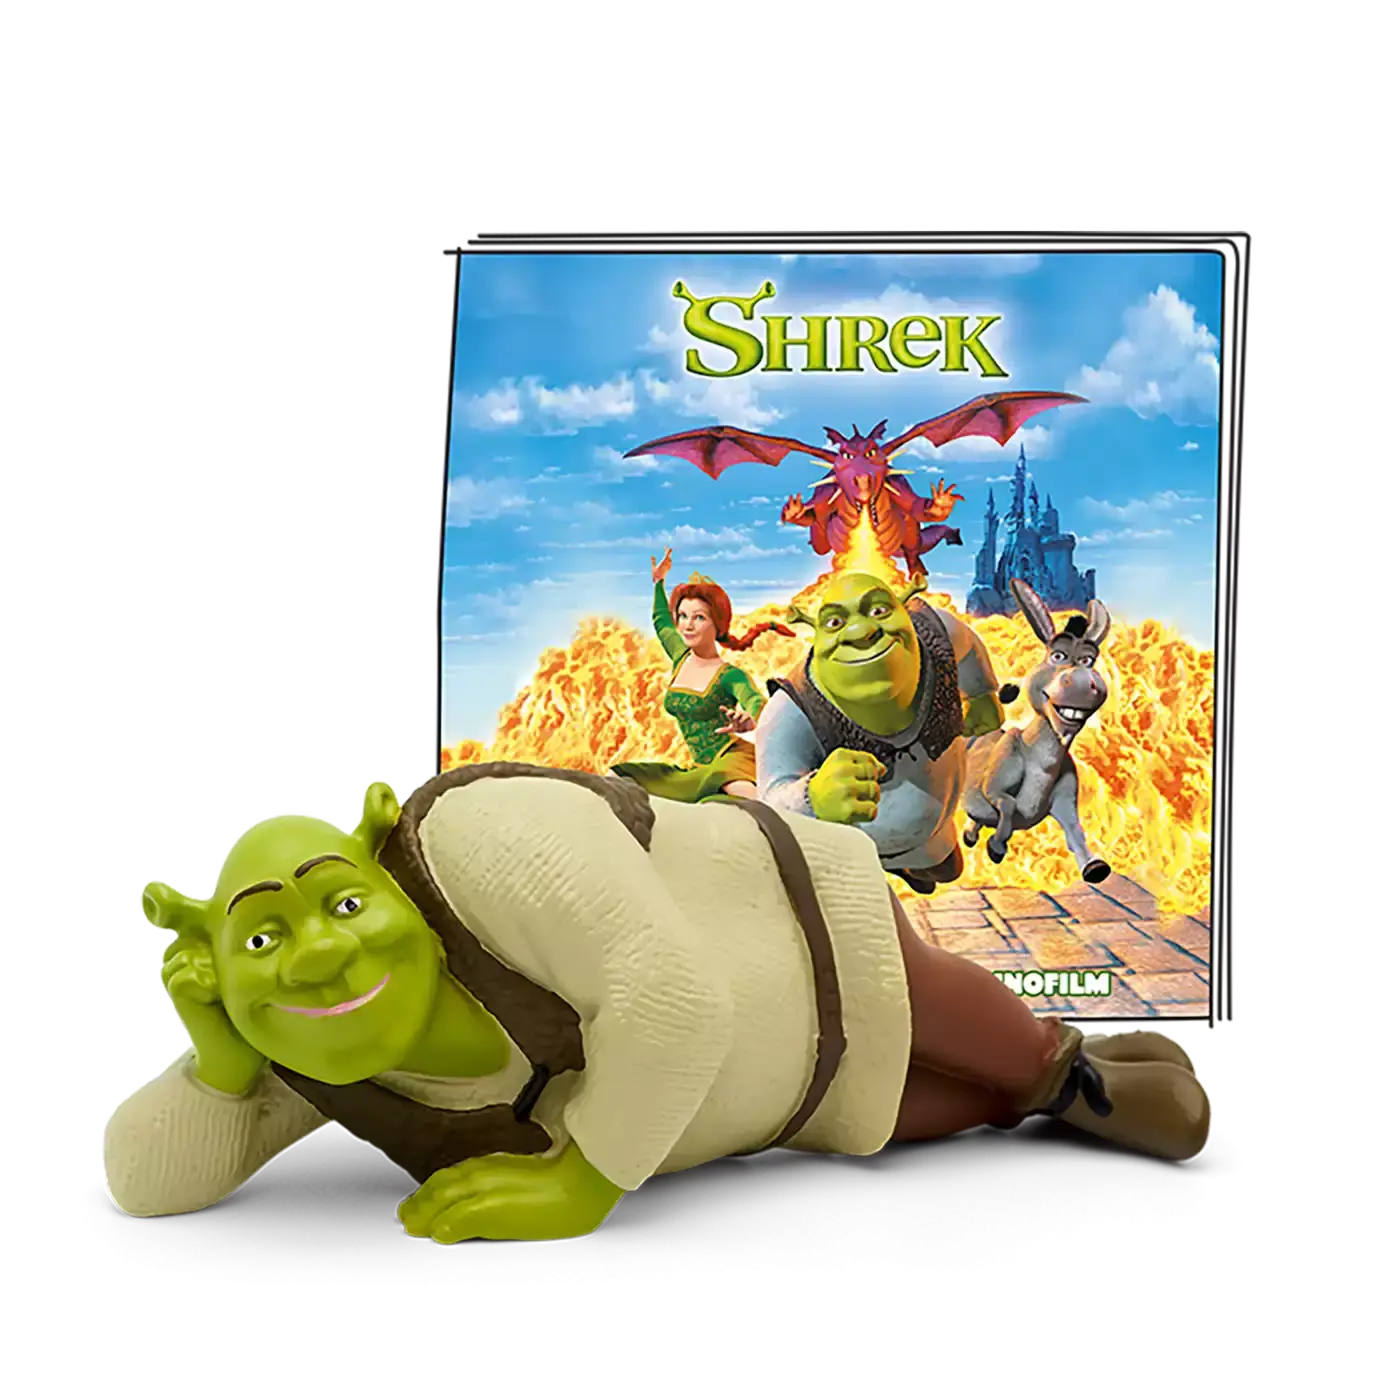 Shrek - Der tollkühne Held tonies 2000580565508 3